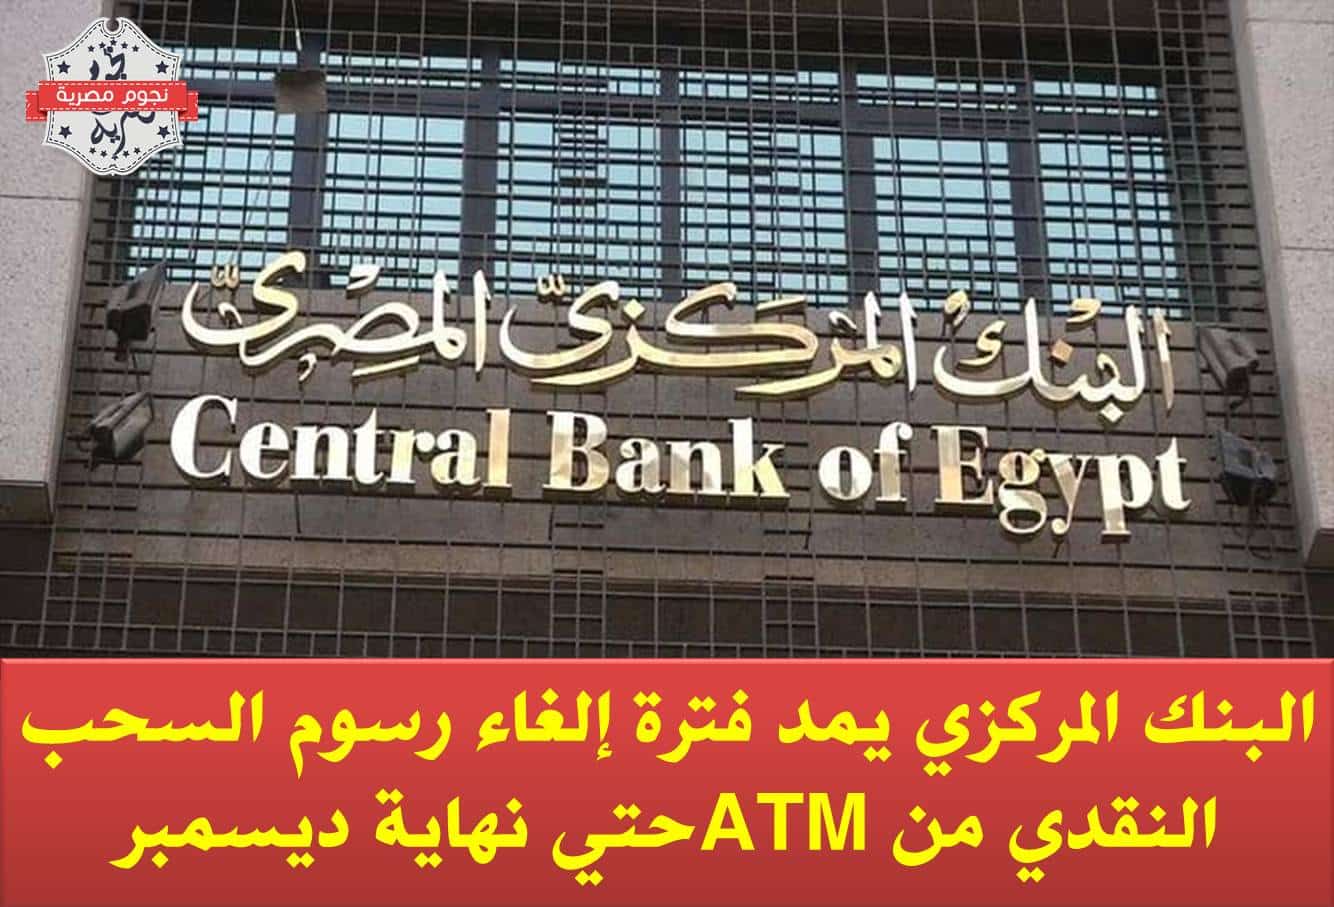 البنك المركزي يمد فترة إلغاء رسوم السحب النقدي من ATM حتي نهاية ديسمبر